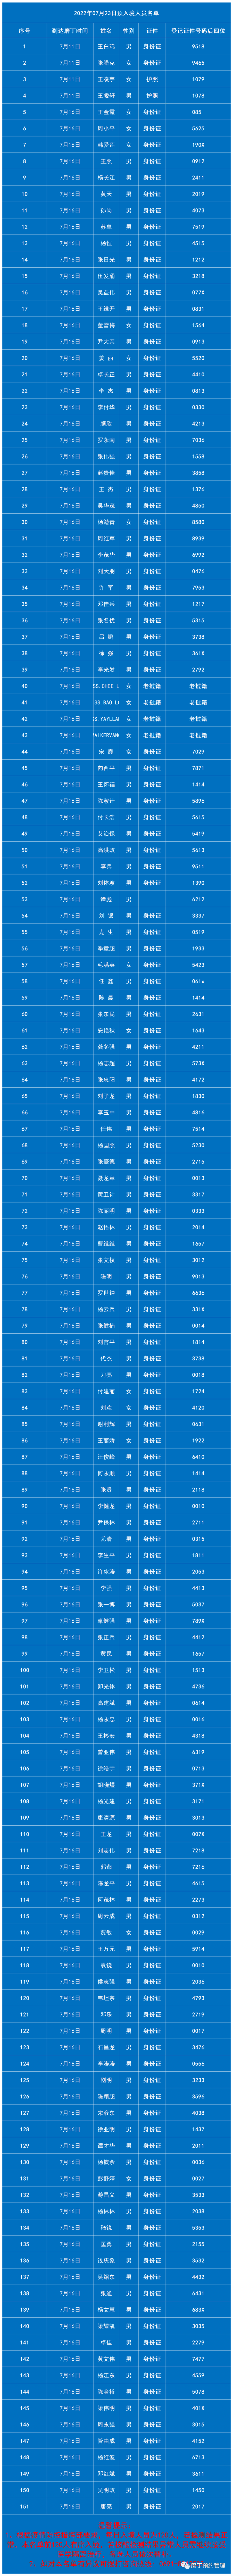 磨丁7月23日预入境中国人员名单